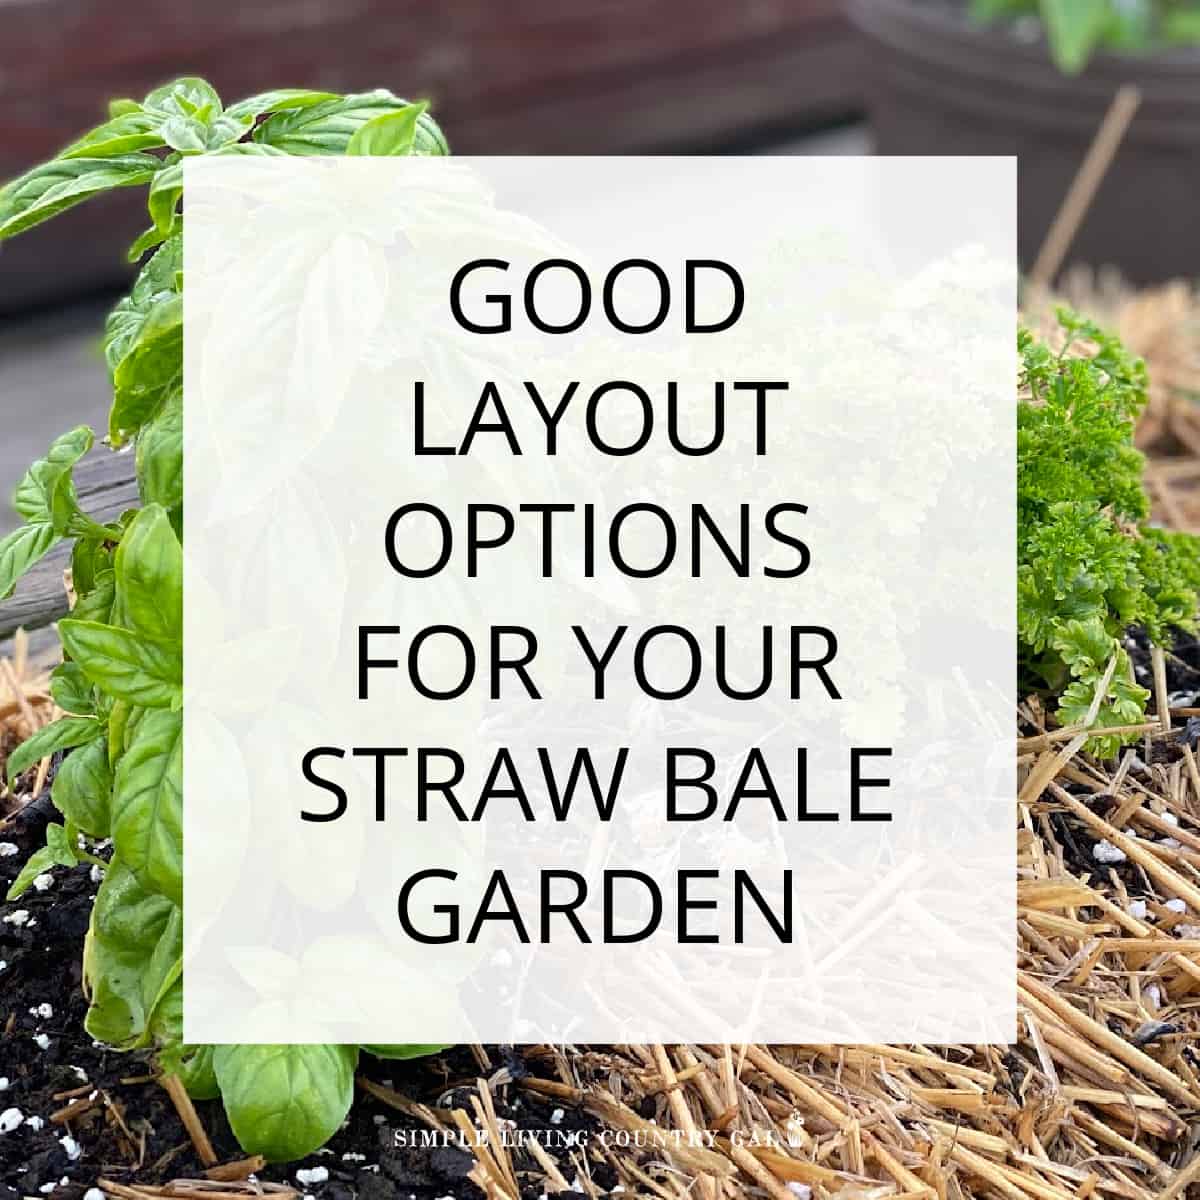 Straw bale garden plant layout